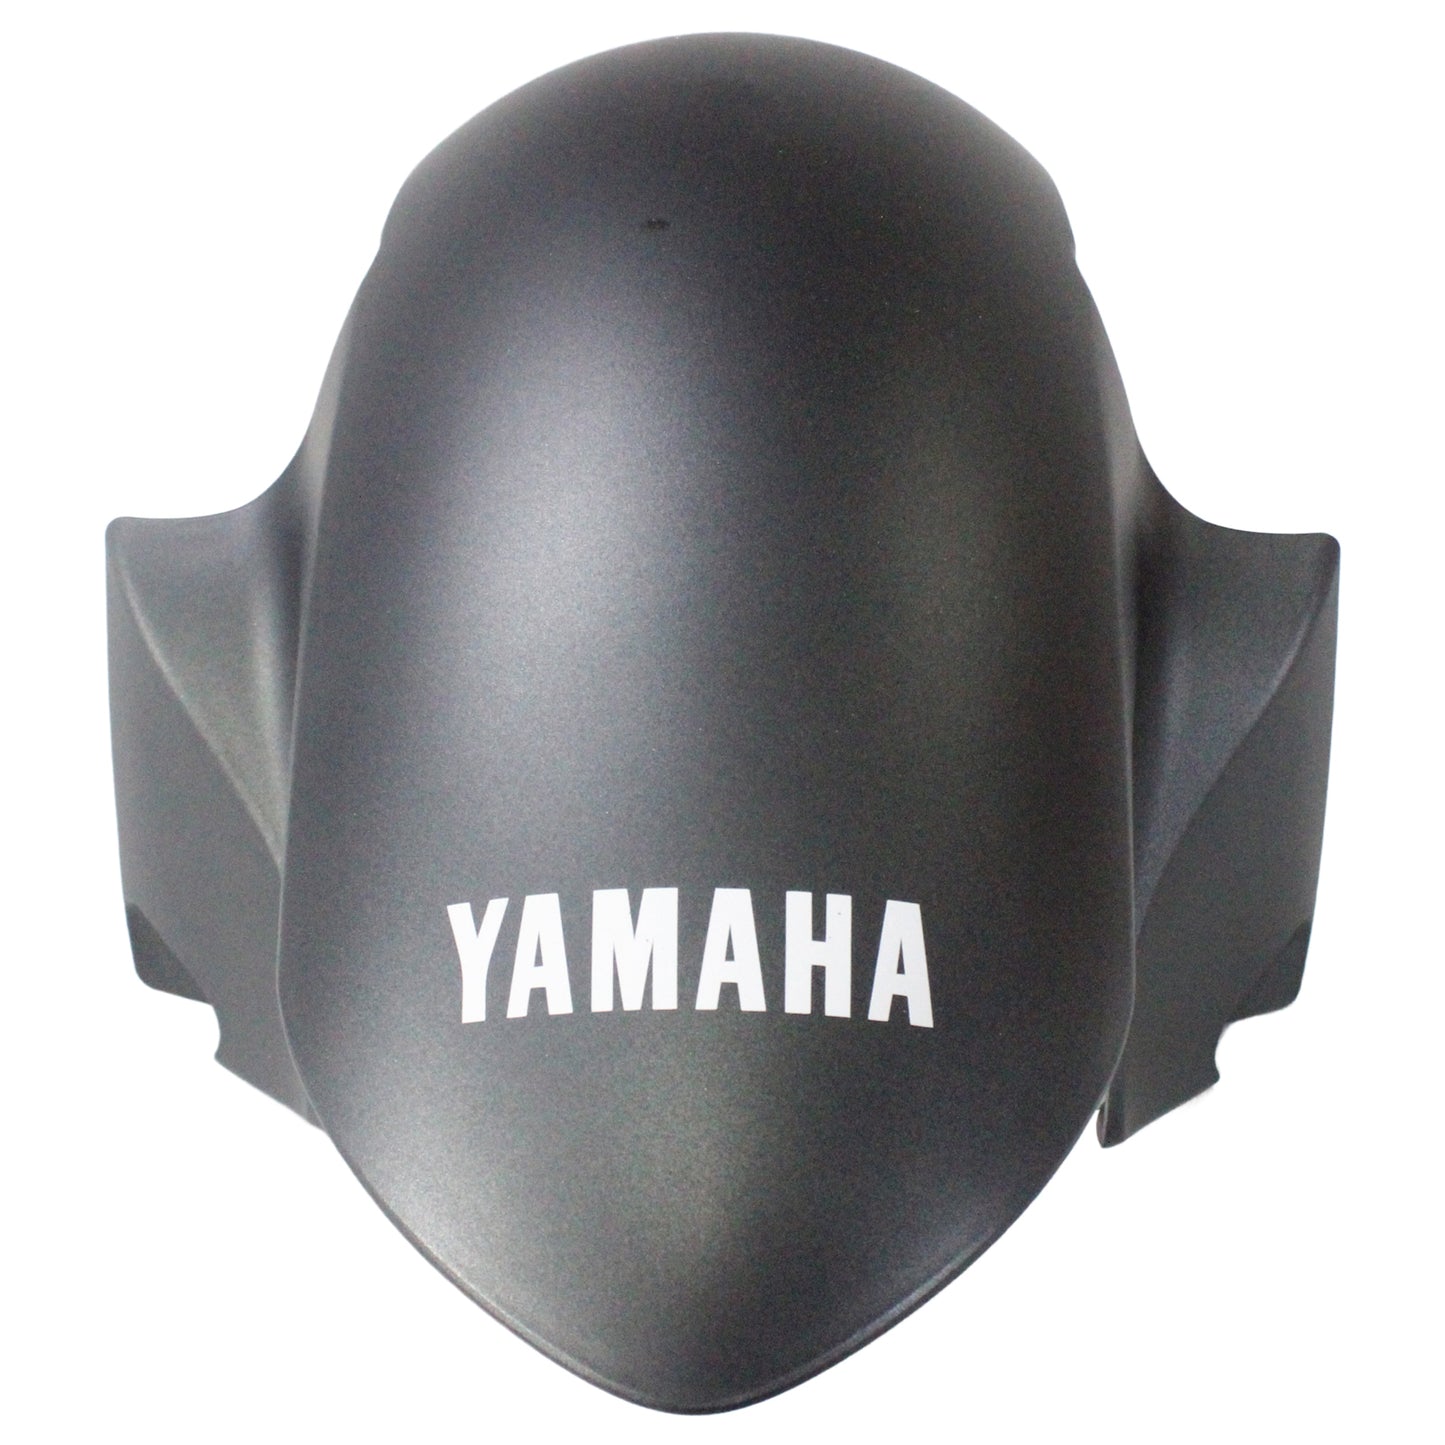 Amotopart Verkleidung fit für Yamaha YZF 600 R6 2006-2007